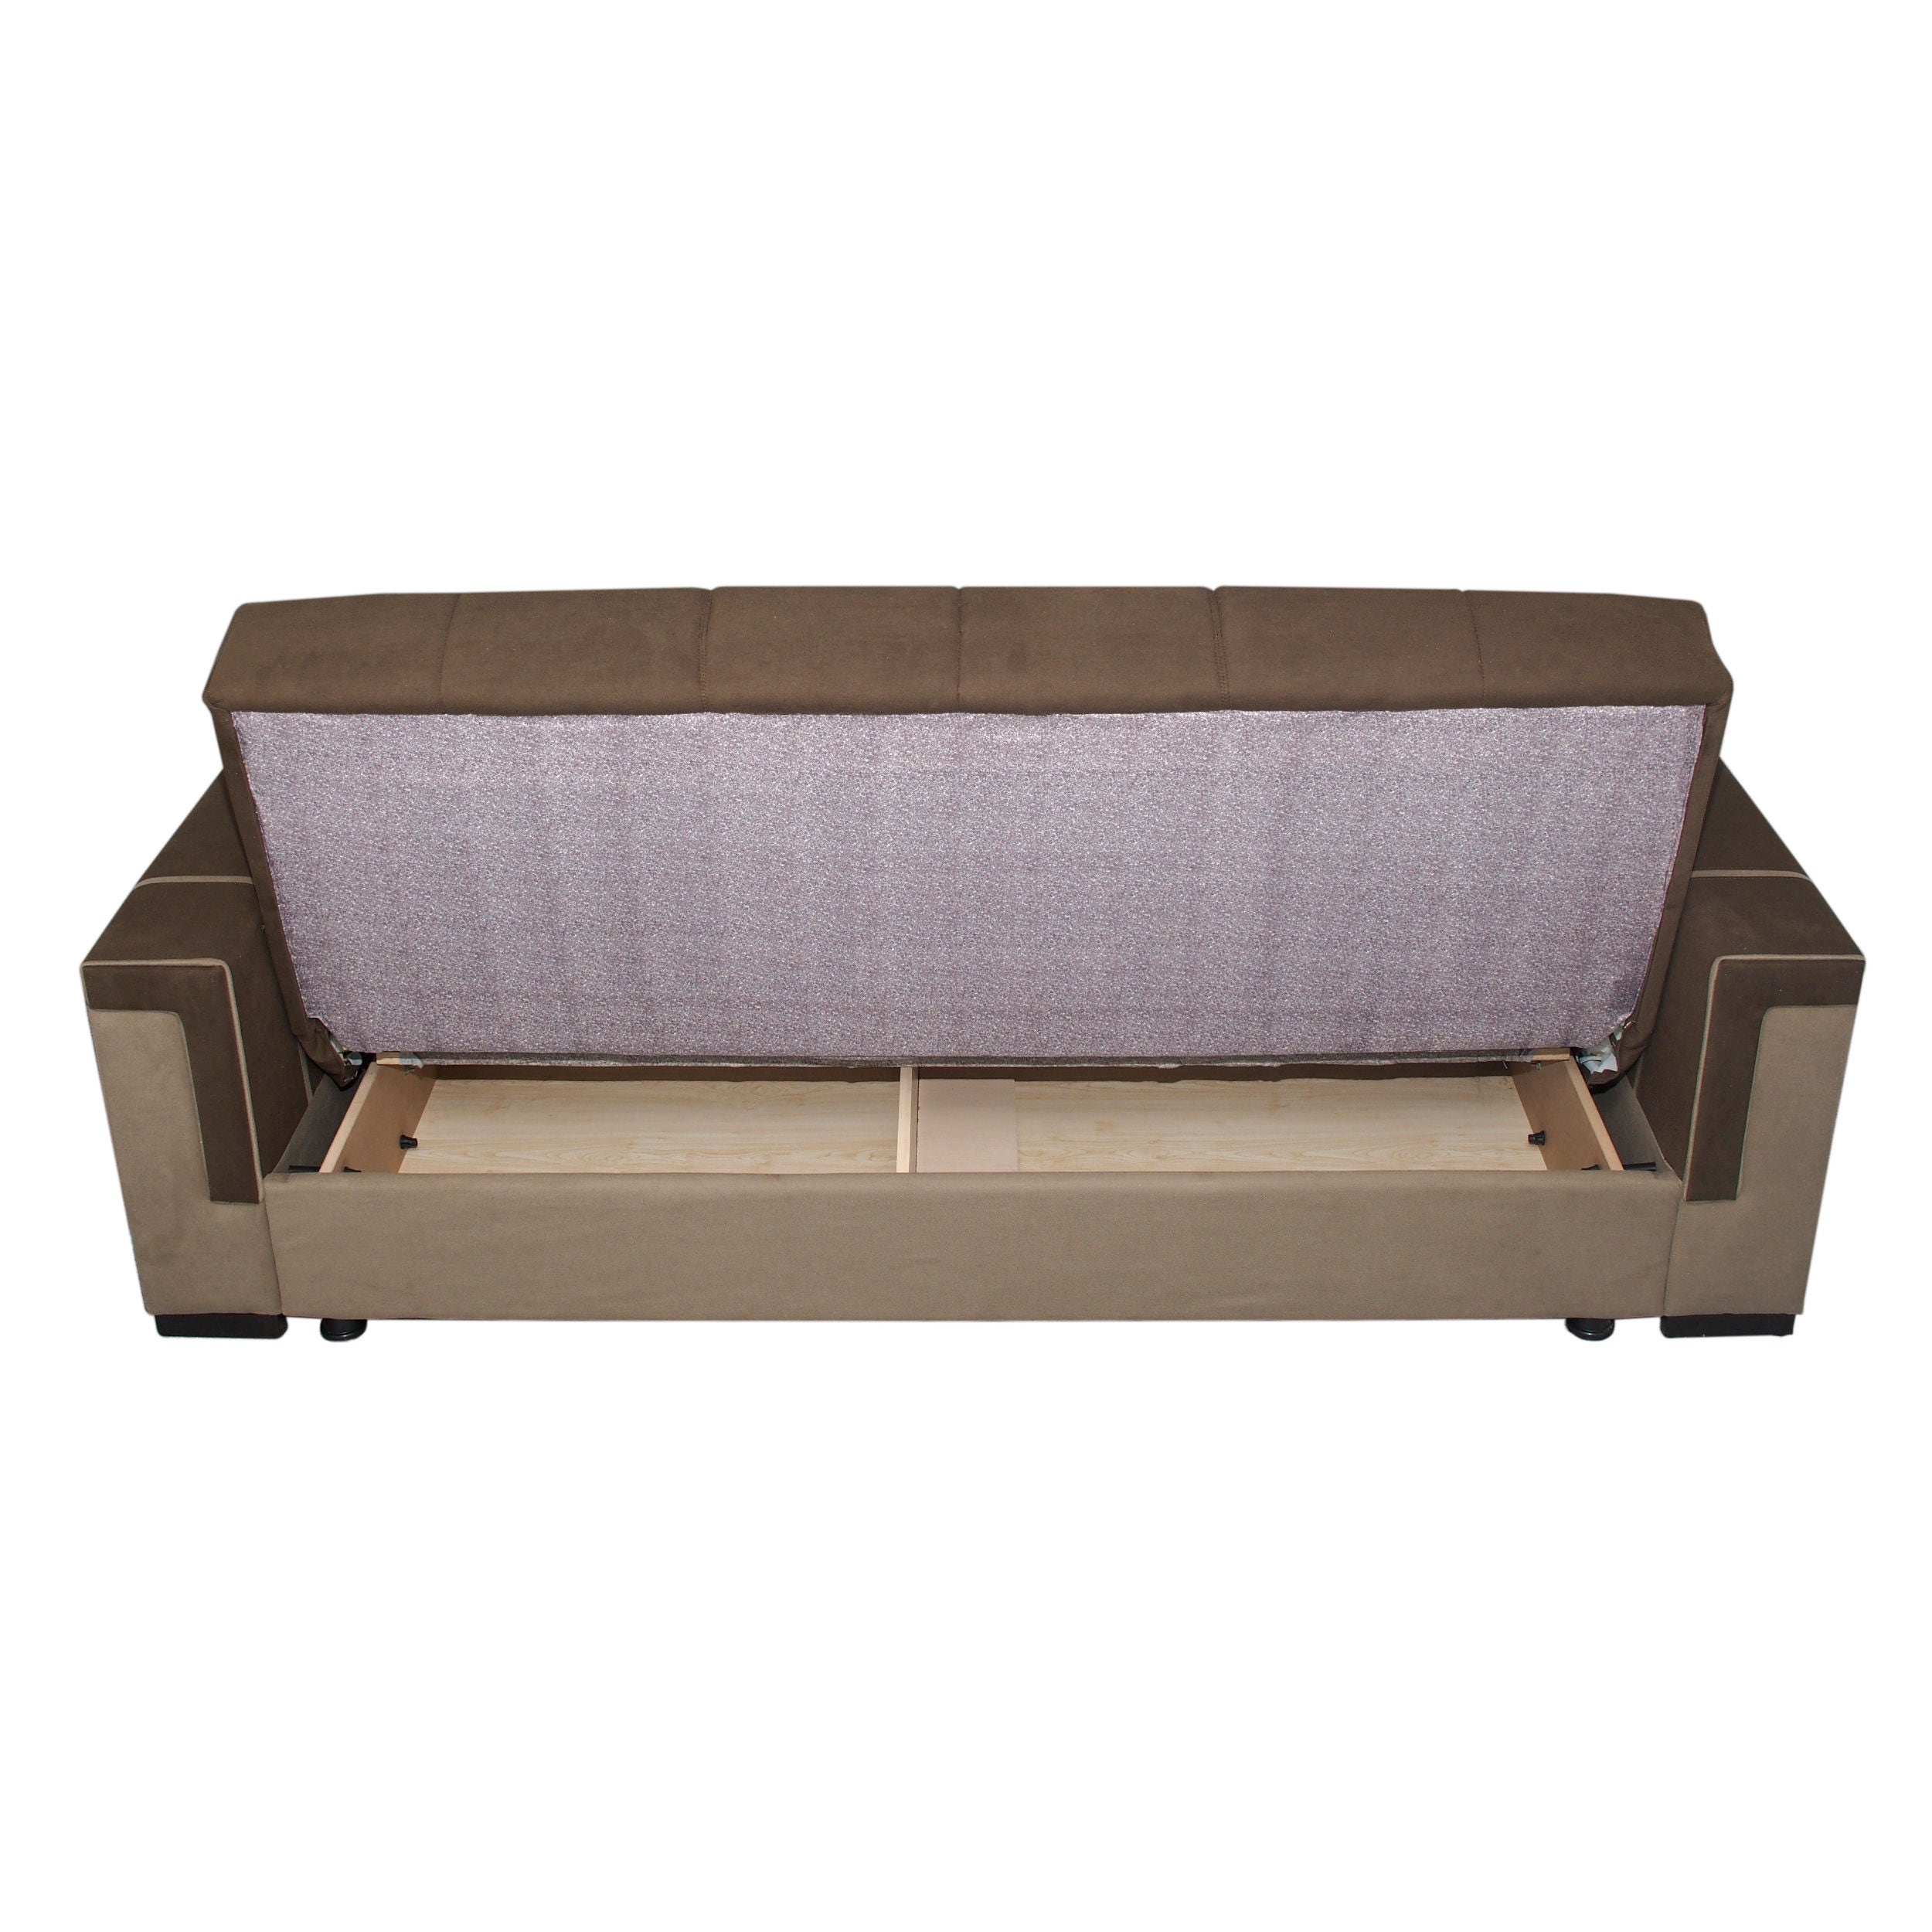 Canapea extensibila 3 locuri Ideal, cu lada, maro inchis + maro deschis, 230 x 90 x 85 cm, 1C